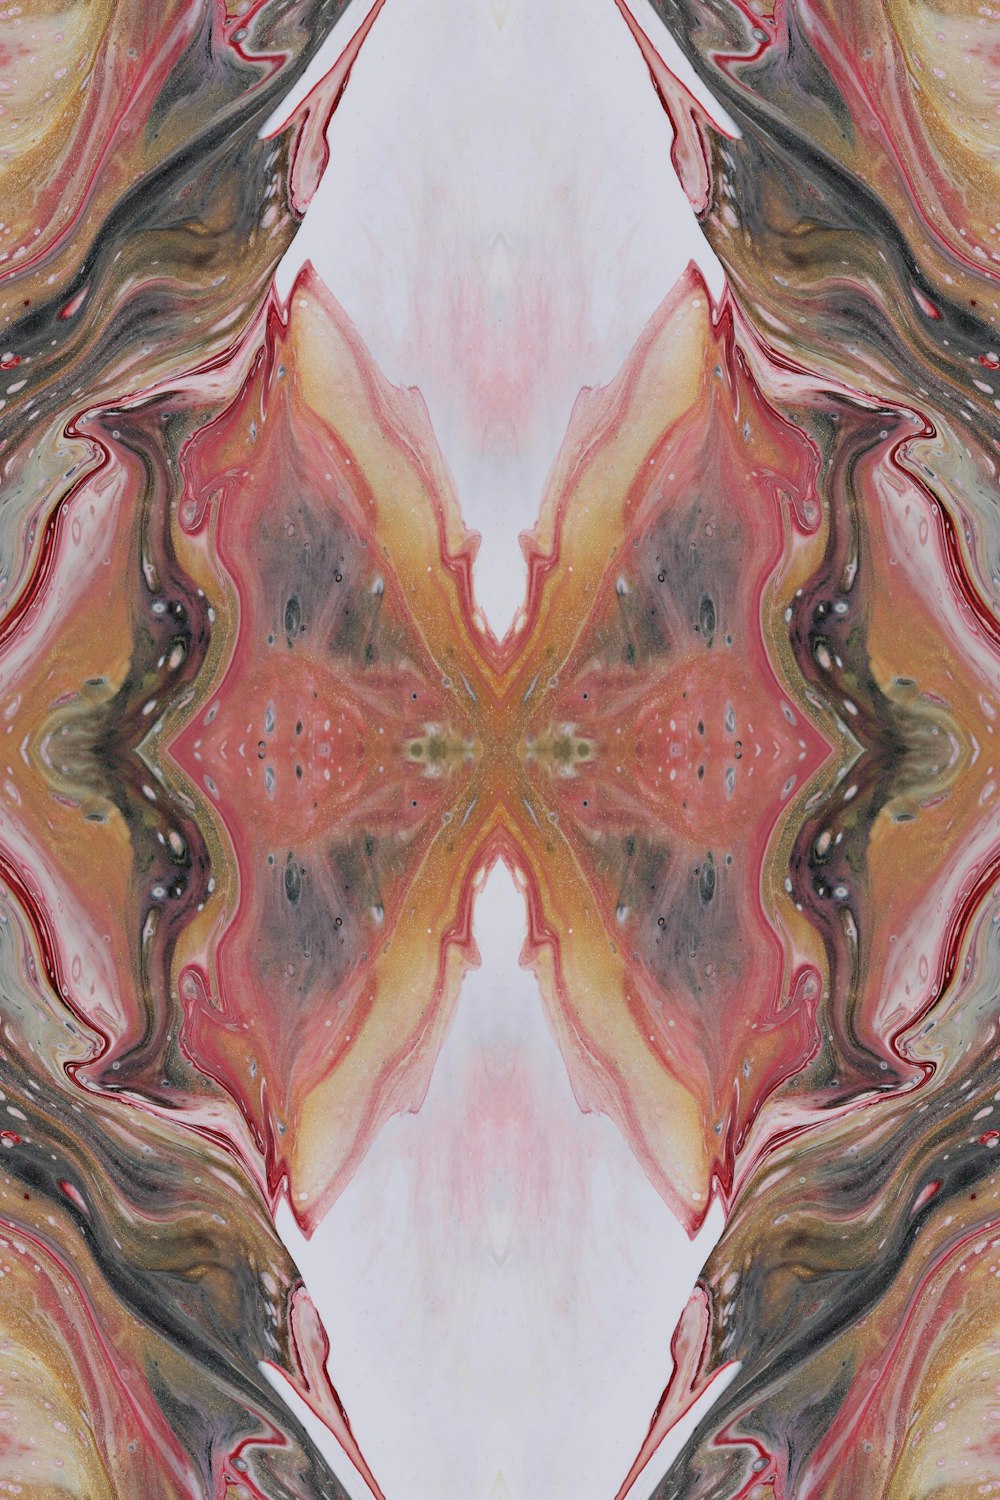 Una imagen abstracta de una flor con un centro rojo